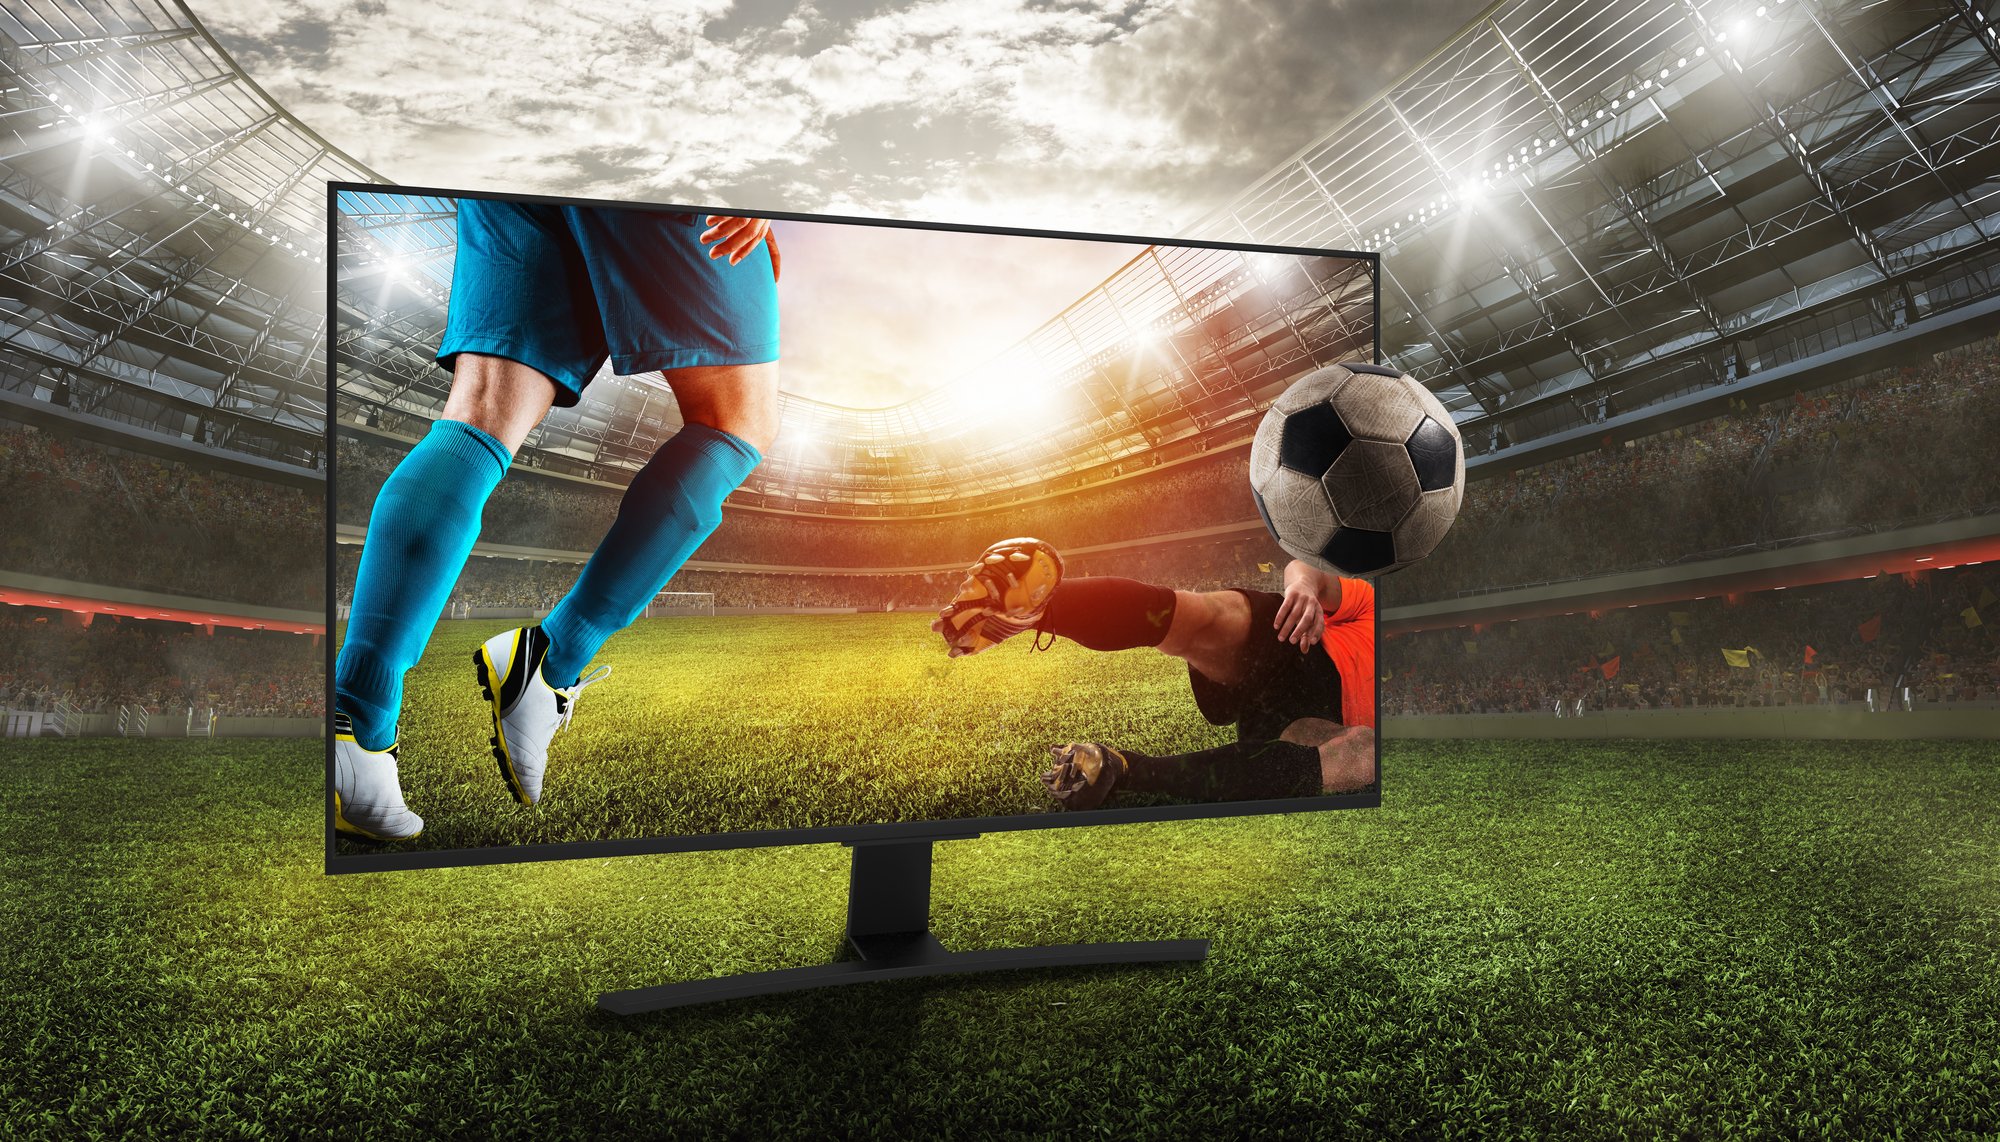 Soccer game through a TV screen